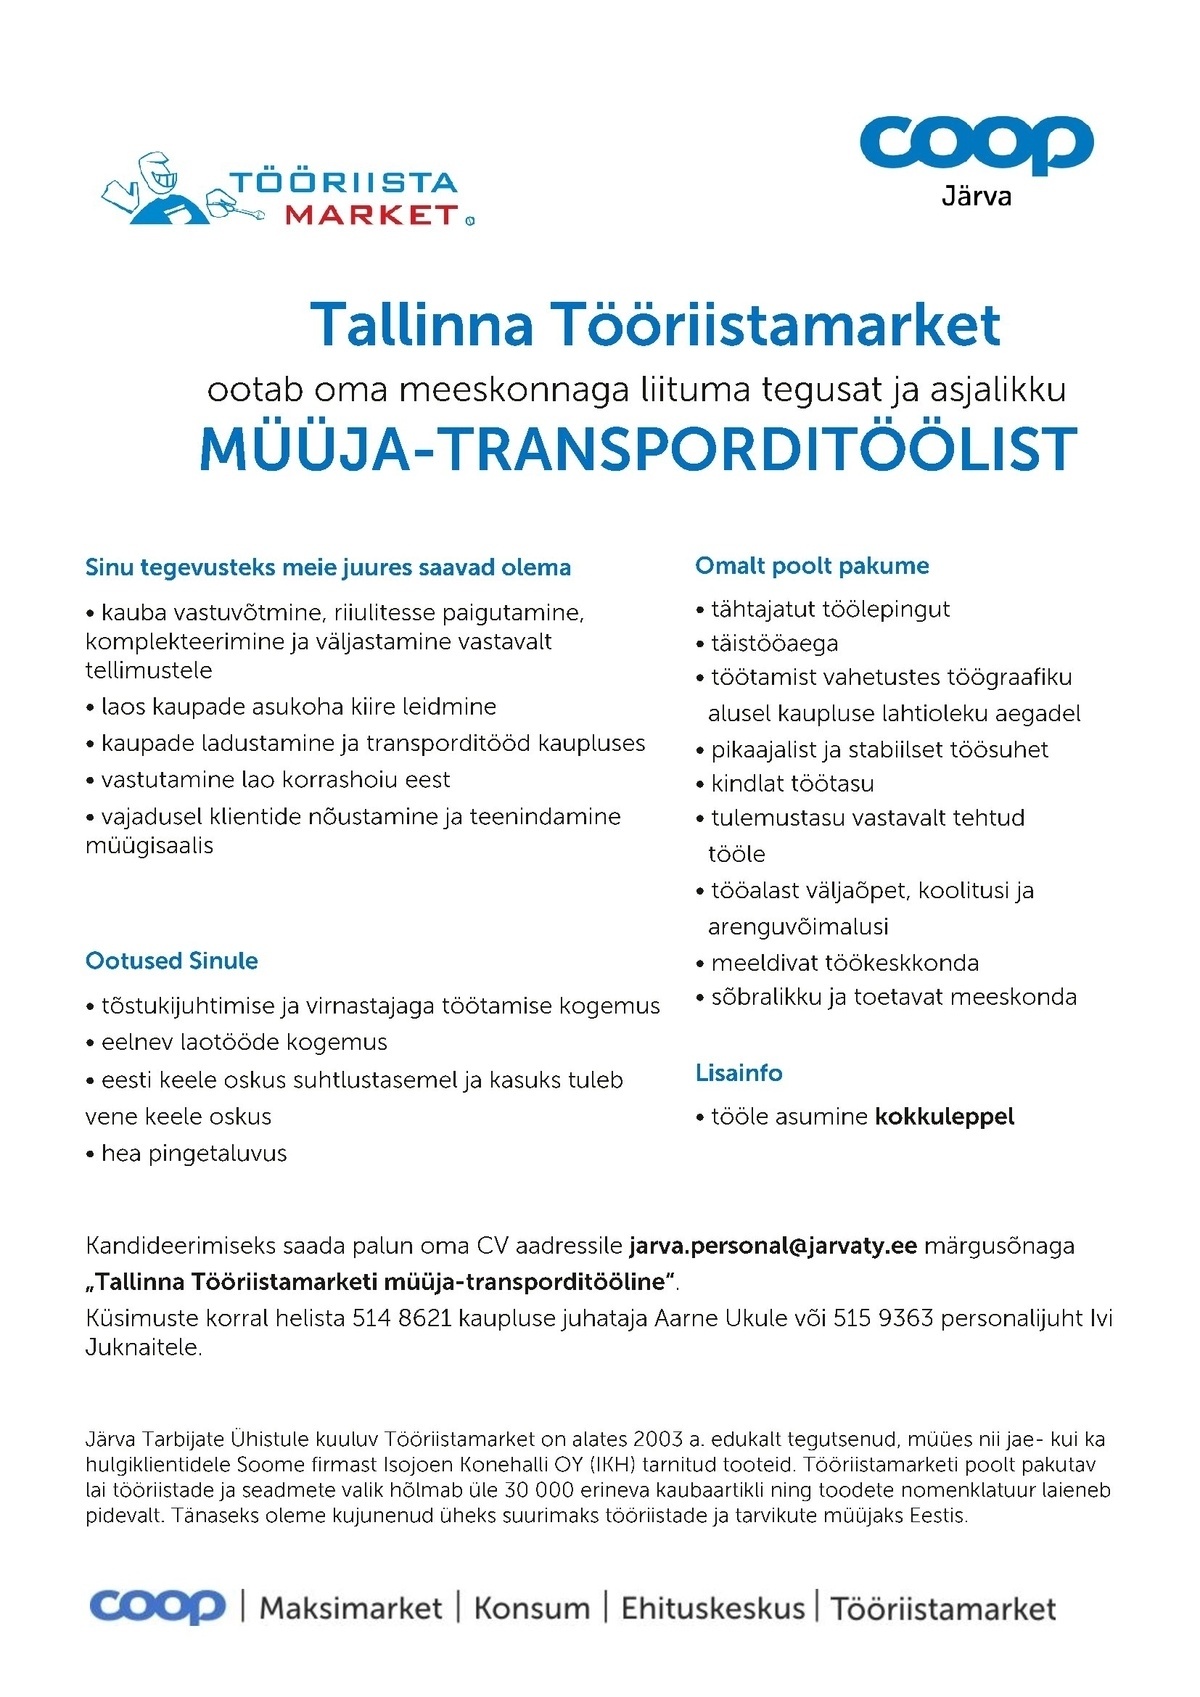 Tööriistamarket MÜÜJA-TRANSPORDITÖÖLINE (Tallinna Tööriistamarket)